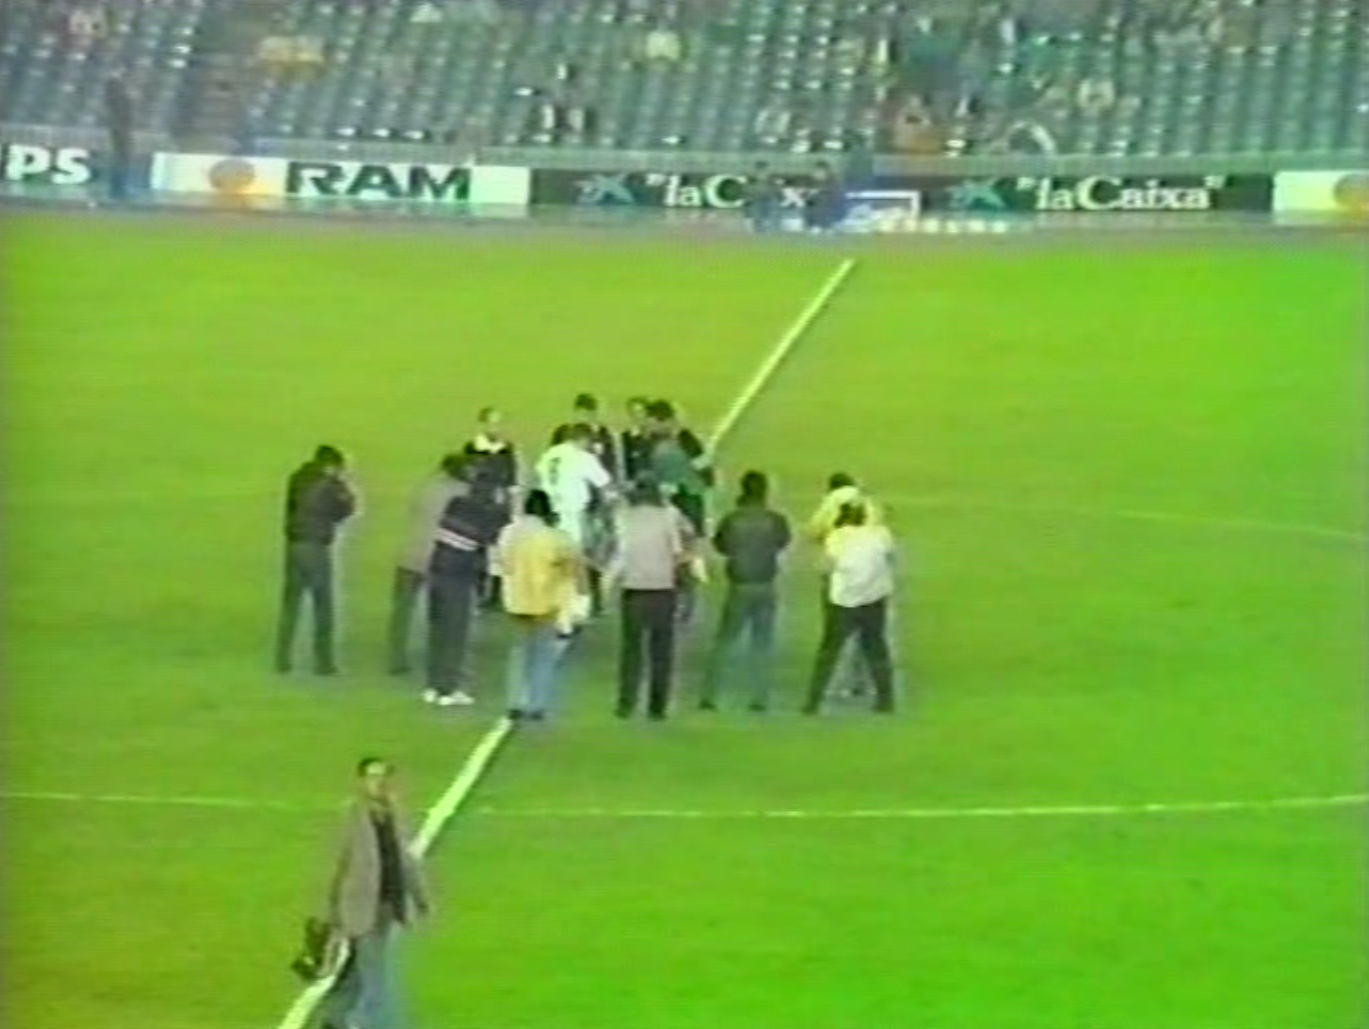 FC Barcelona - Lech Poznań 1:1 (26.10.1988)